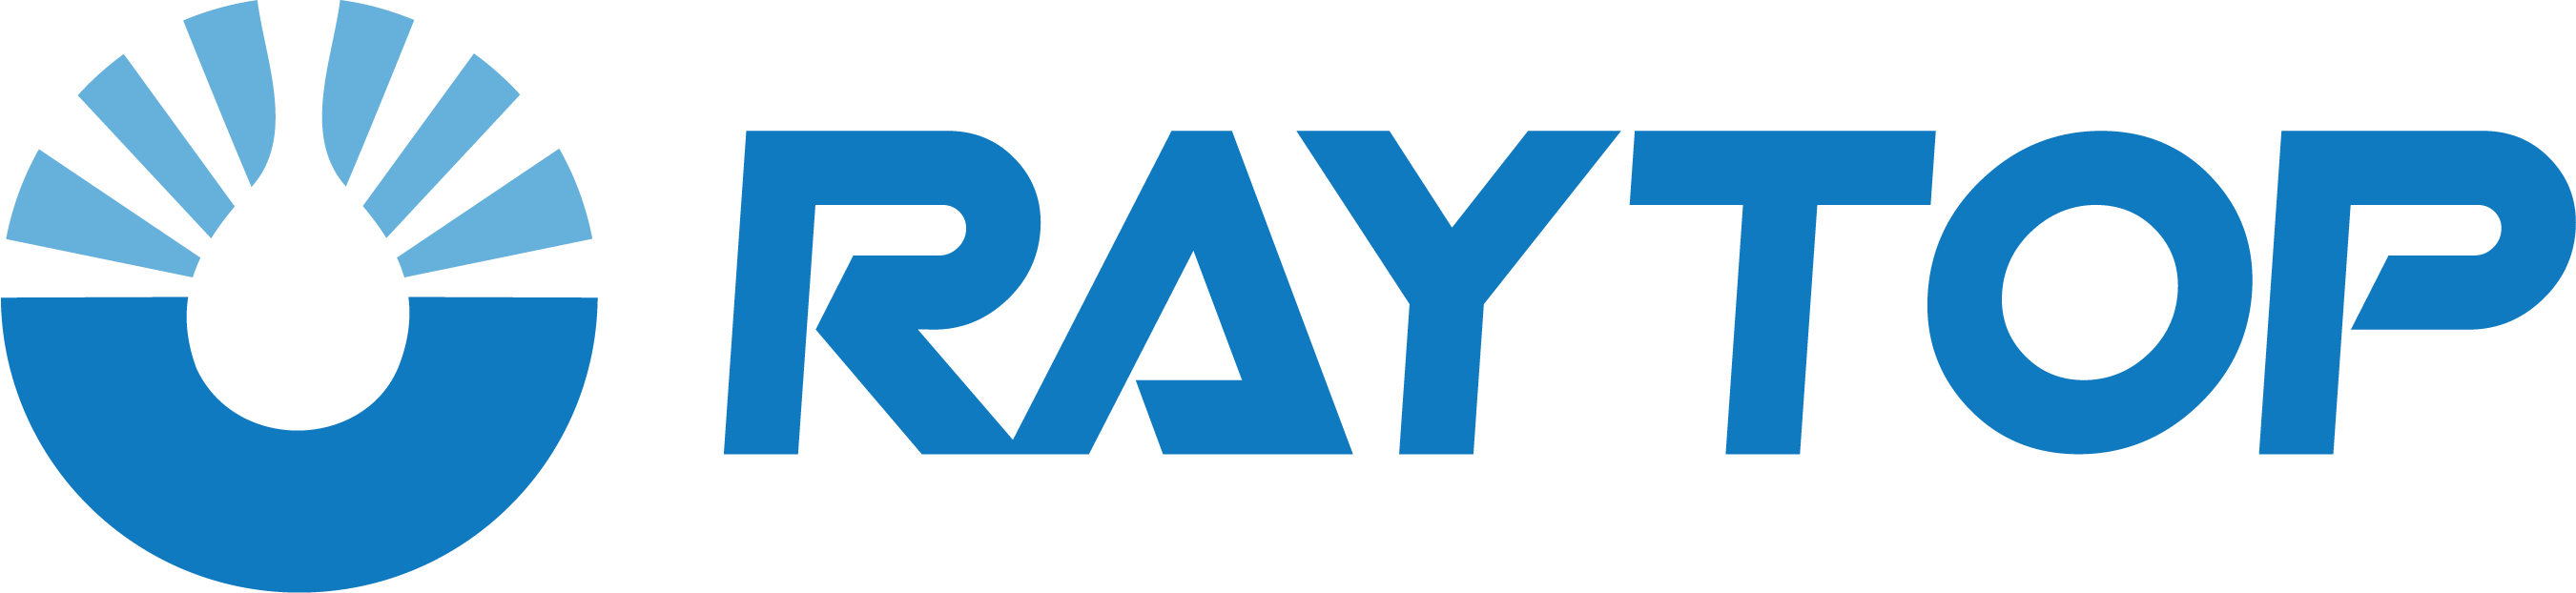 Raytop logo-02